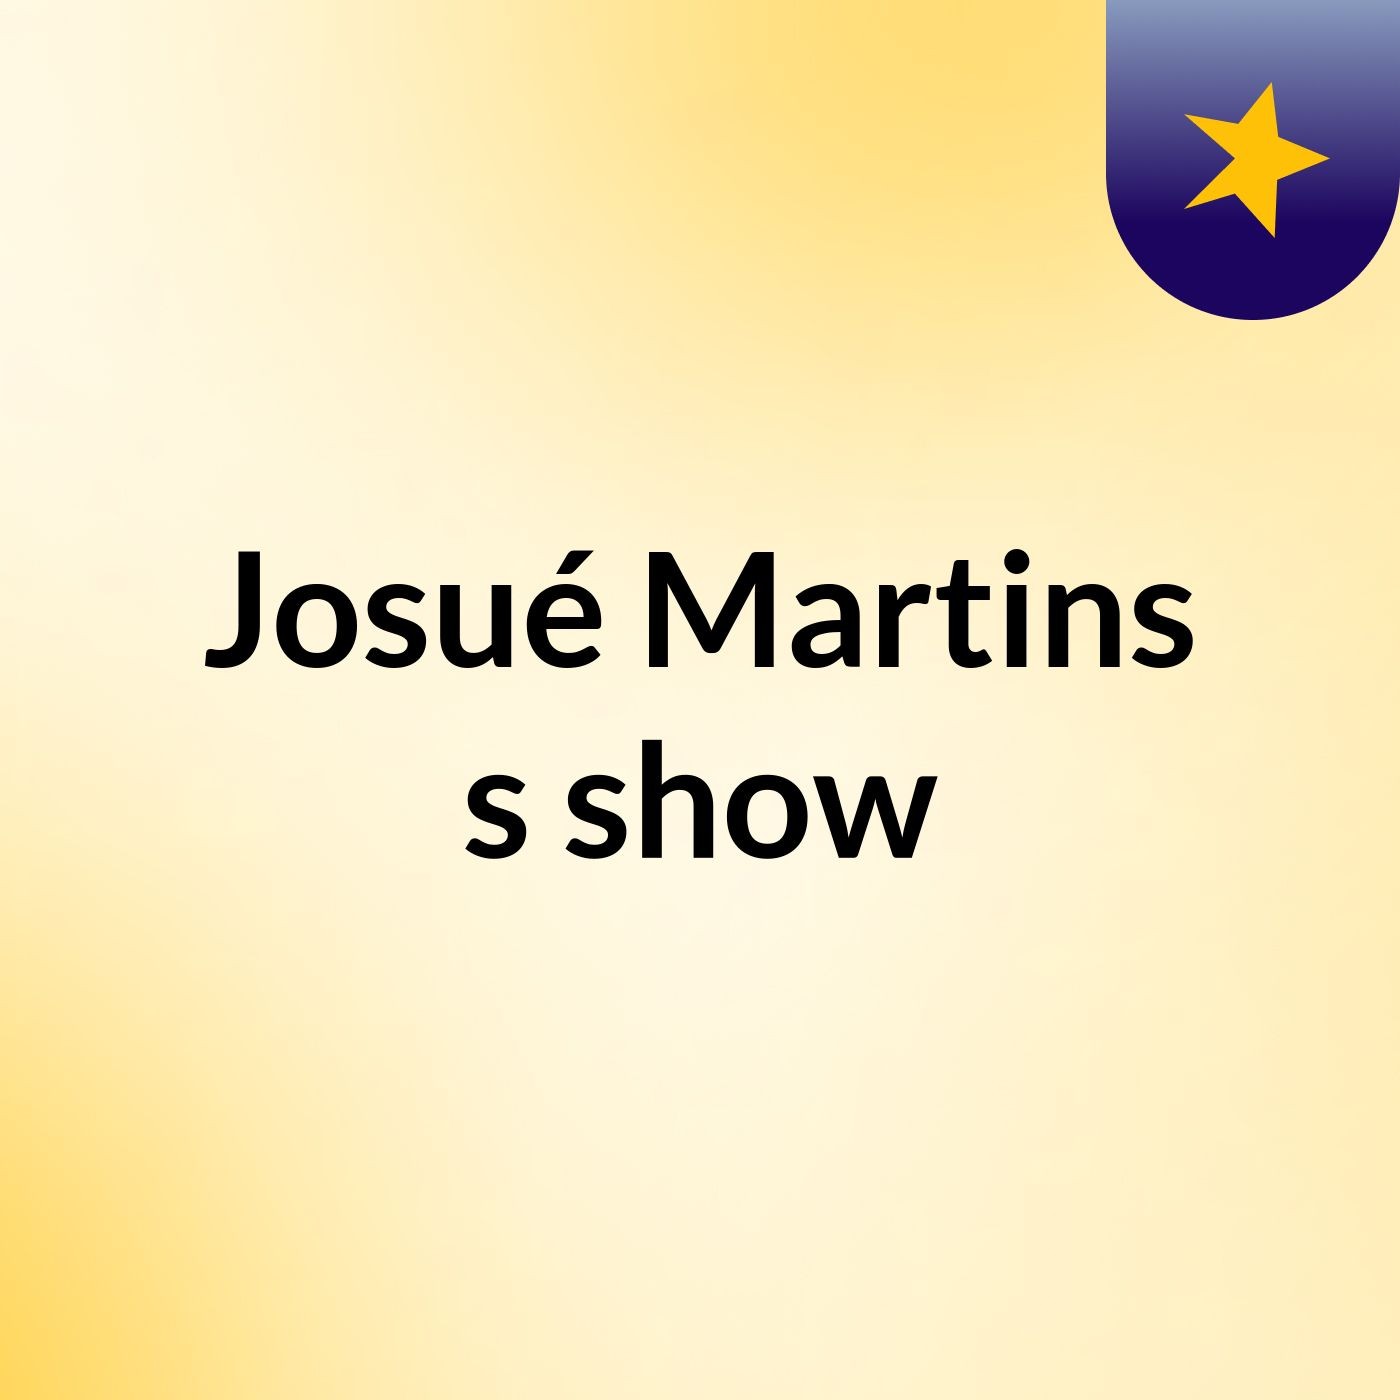 Josué Martins's show